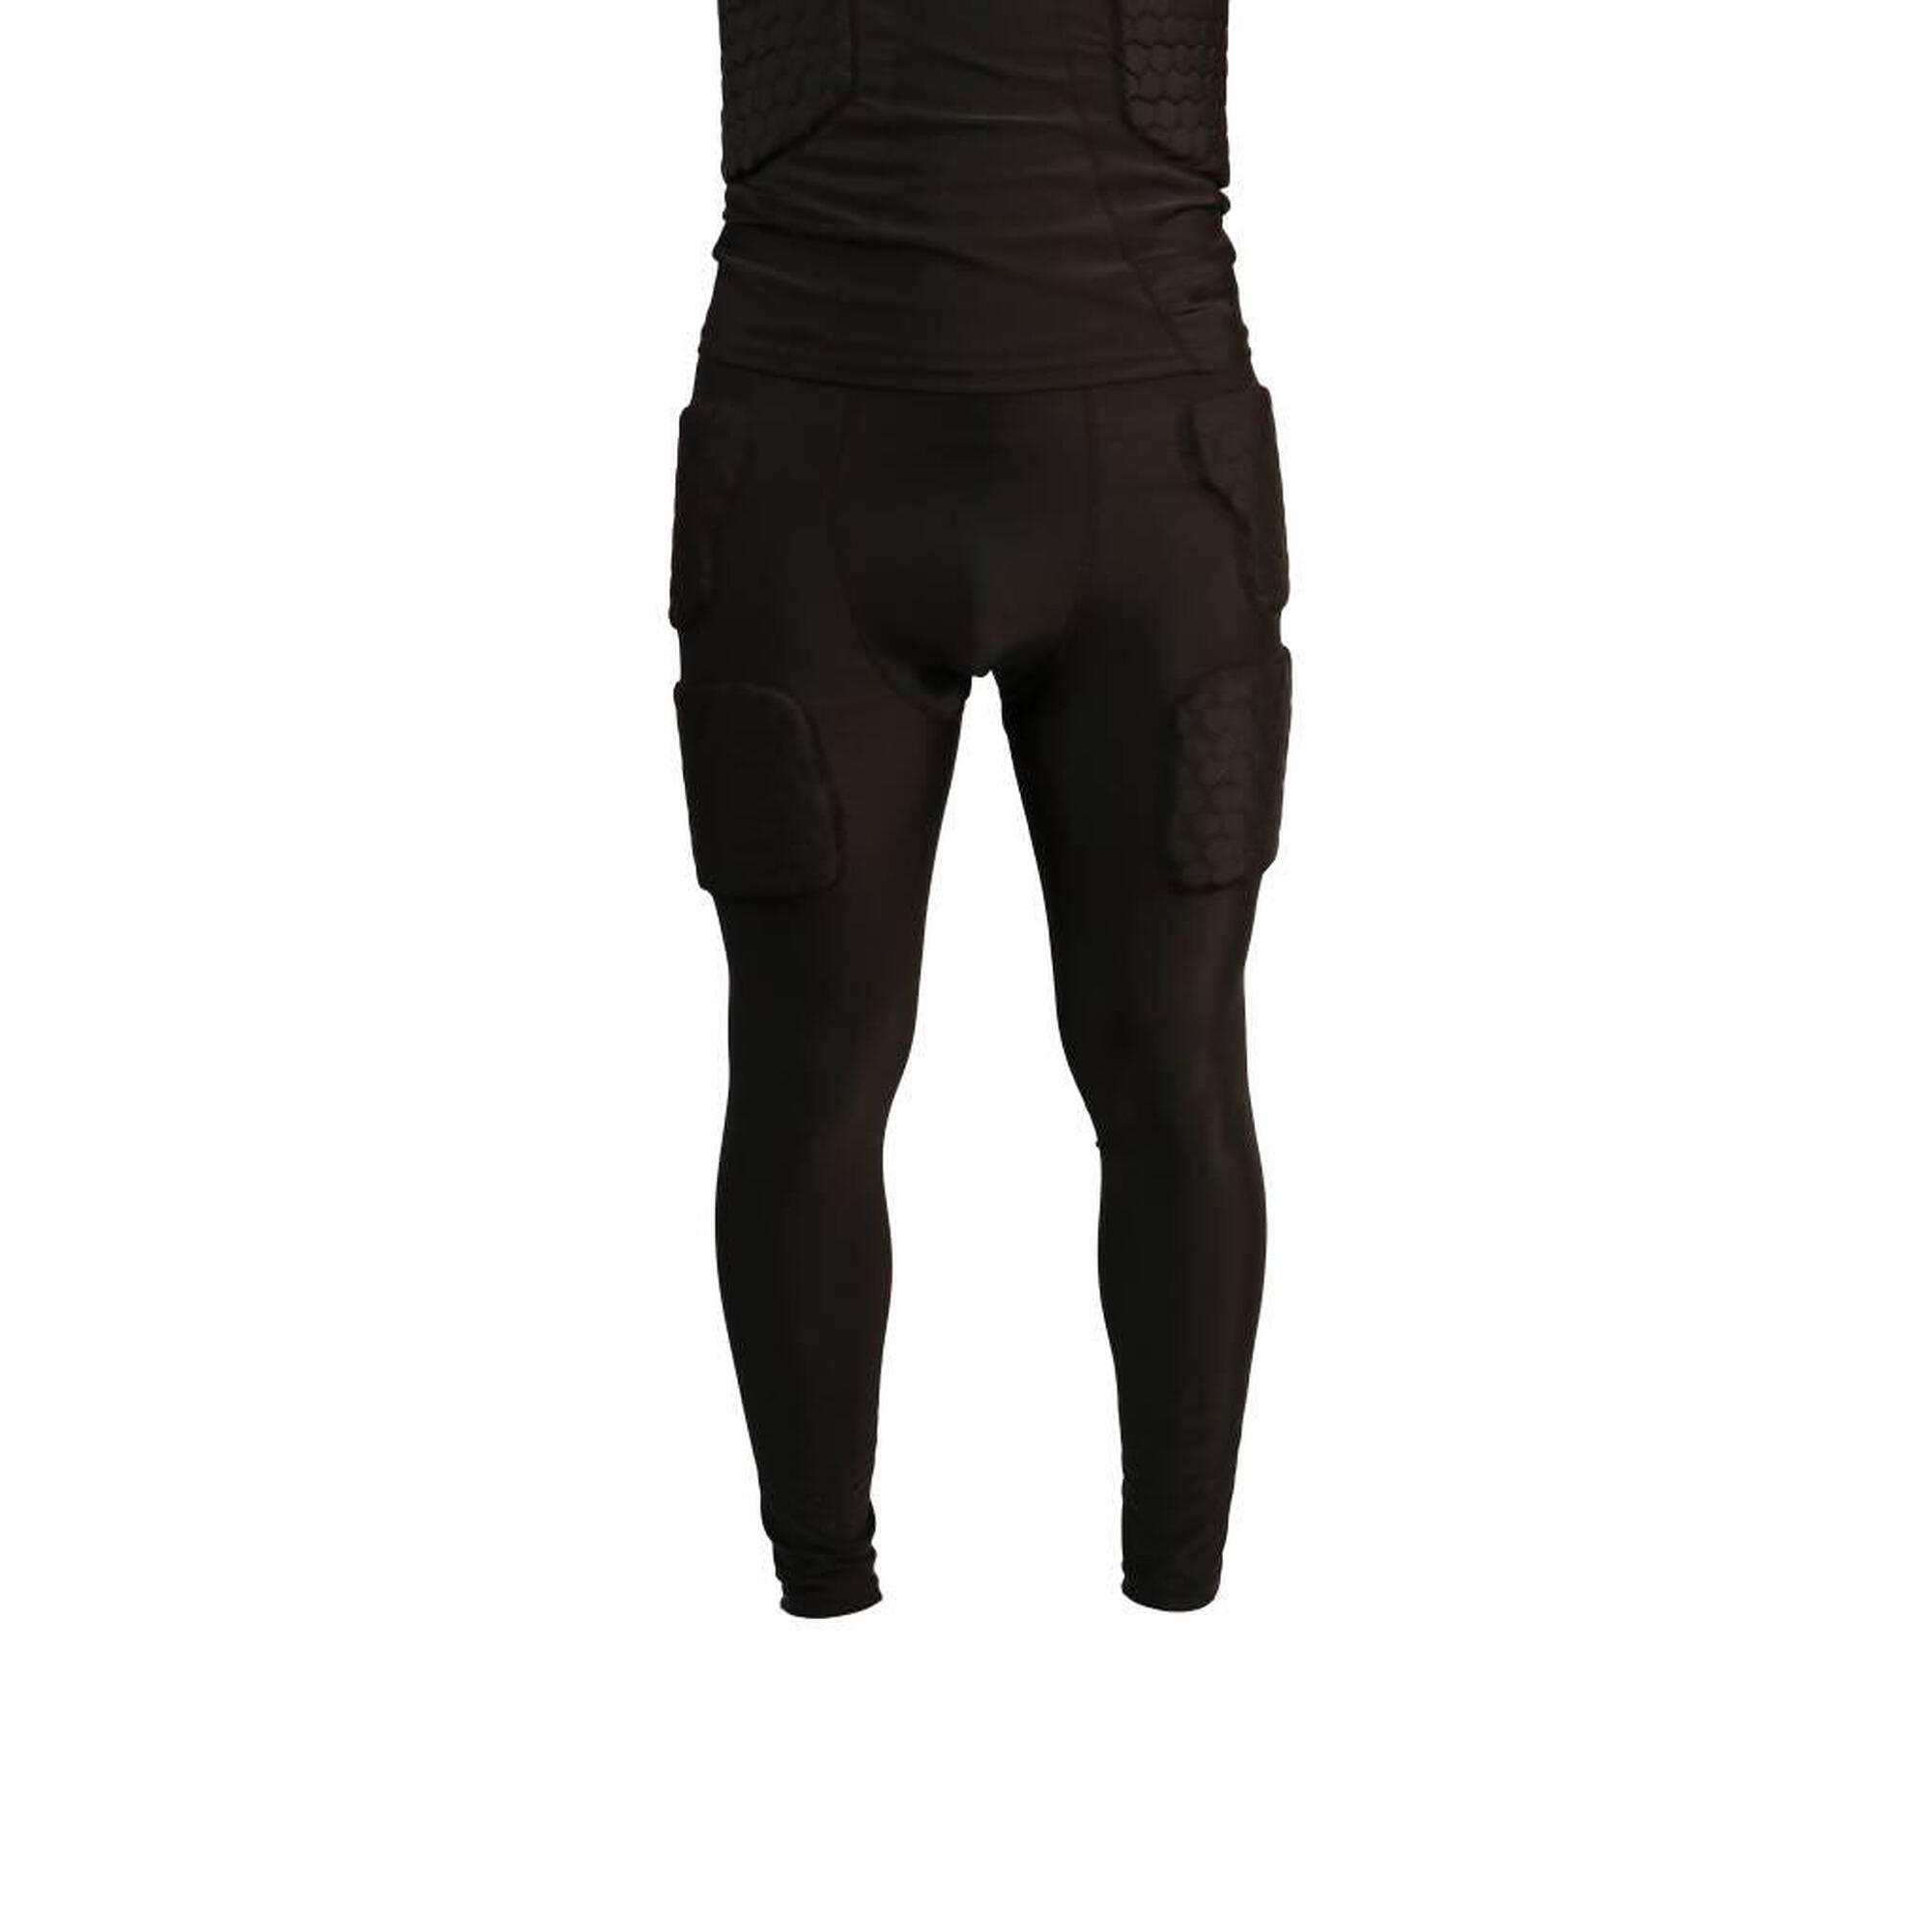  Pantaloni a compressione, 5 pezzi integrati, football americano FS-07